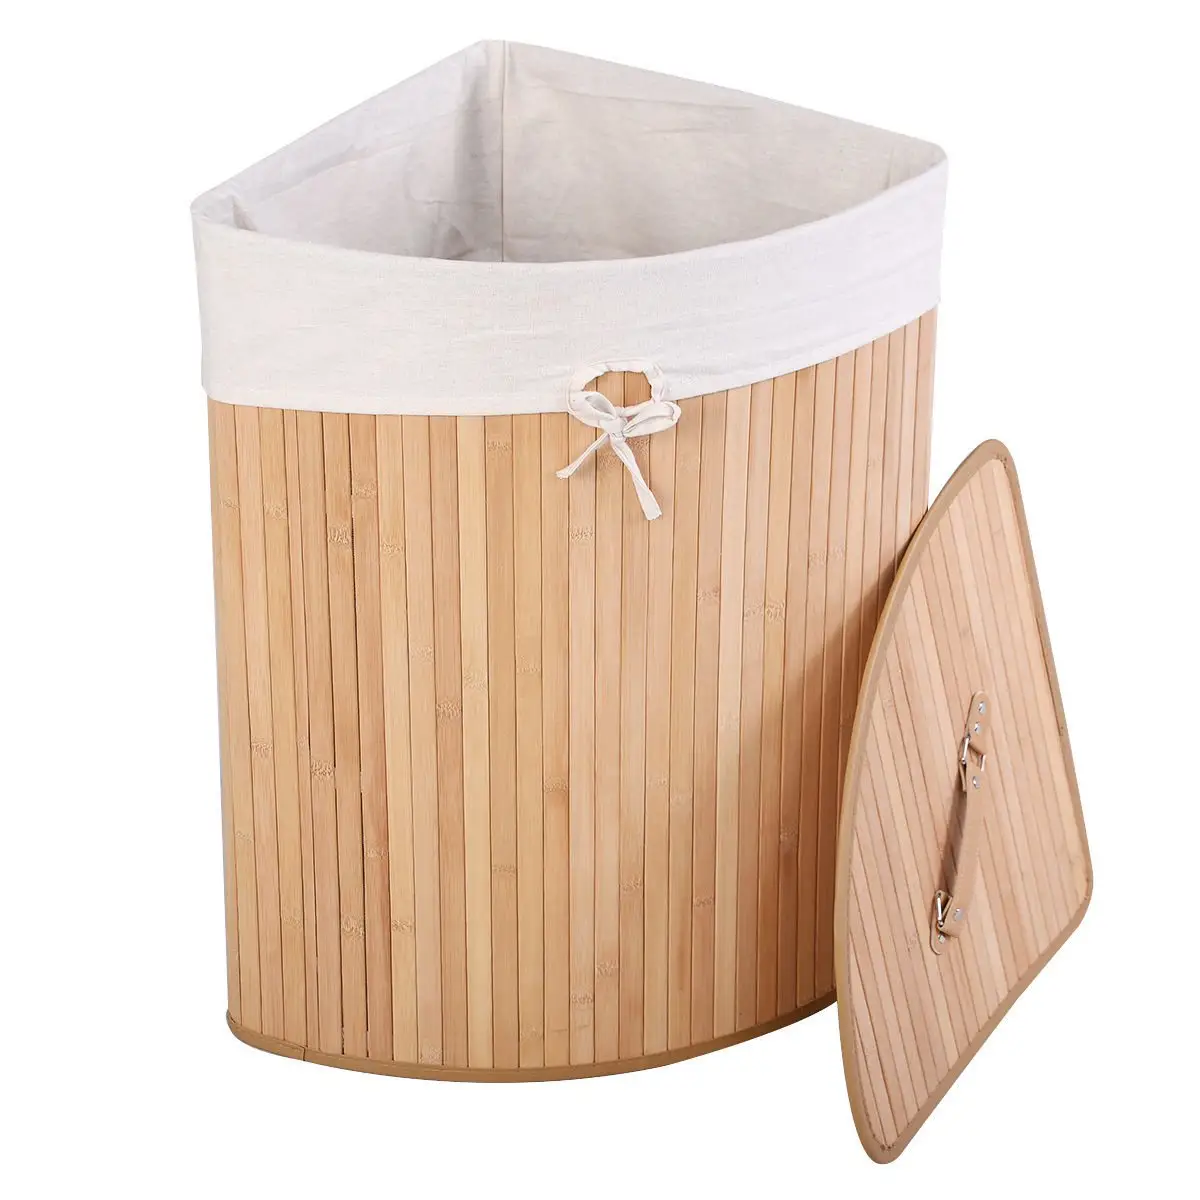 100% hecho a mano natural respetuoso del medio ambiente de los productos plegable de tejer de bambú cesta de lavandería ejemplos de artesanía por LONGTU